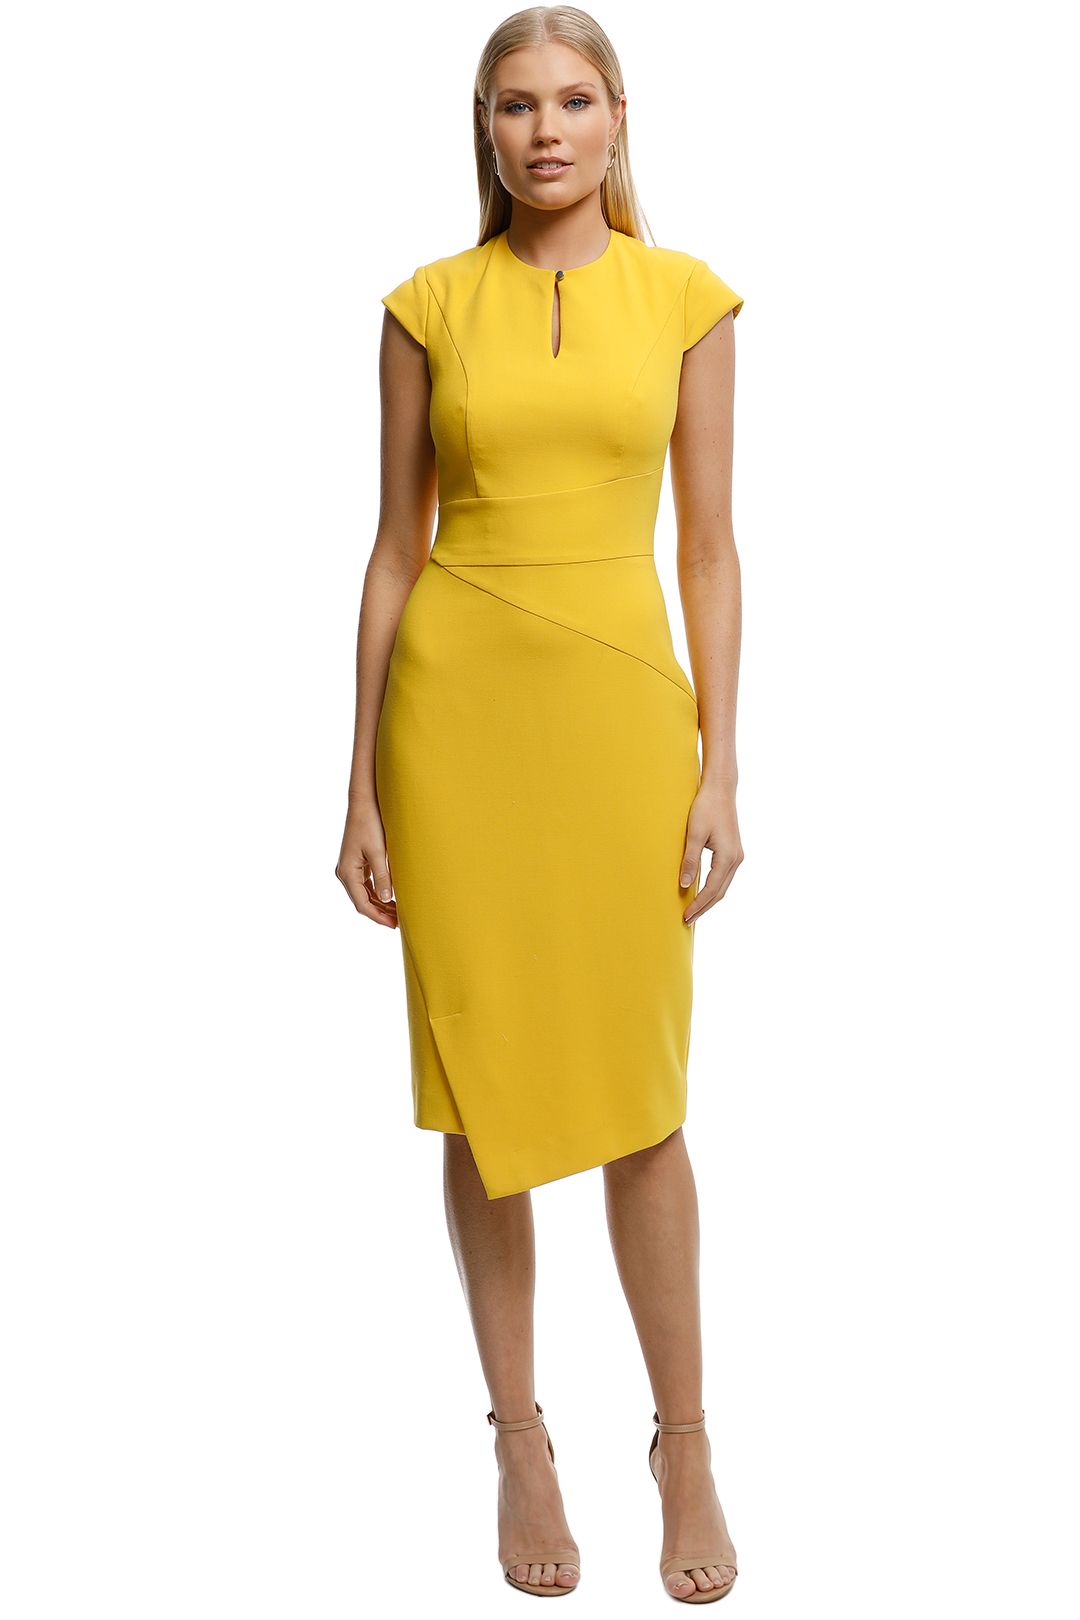 Cue Dresses on Sale, 51% OFF | espirituviajero.com